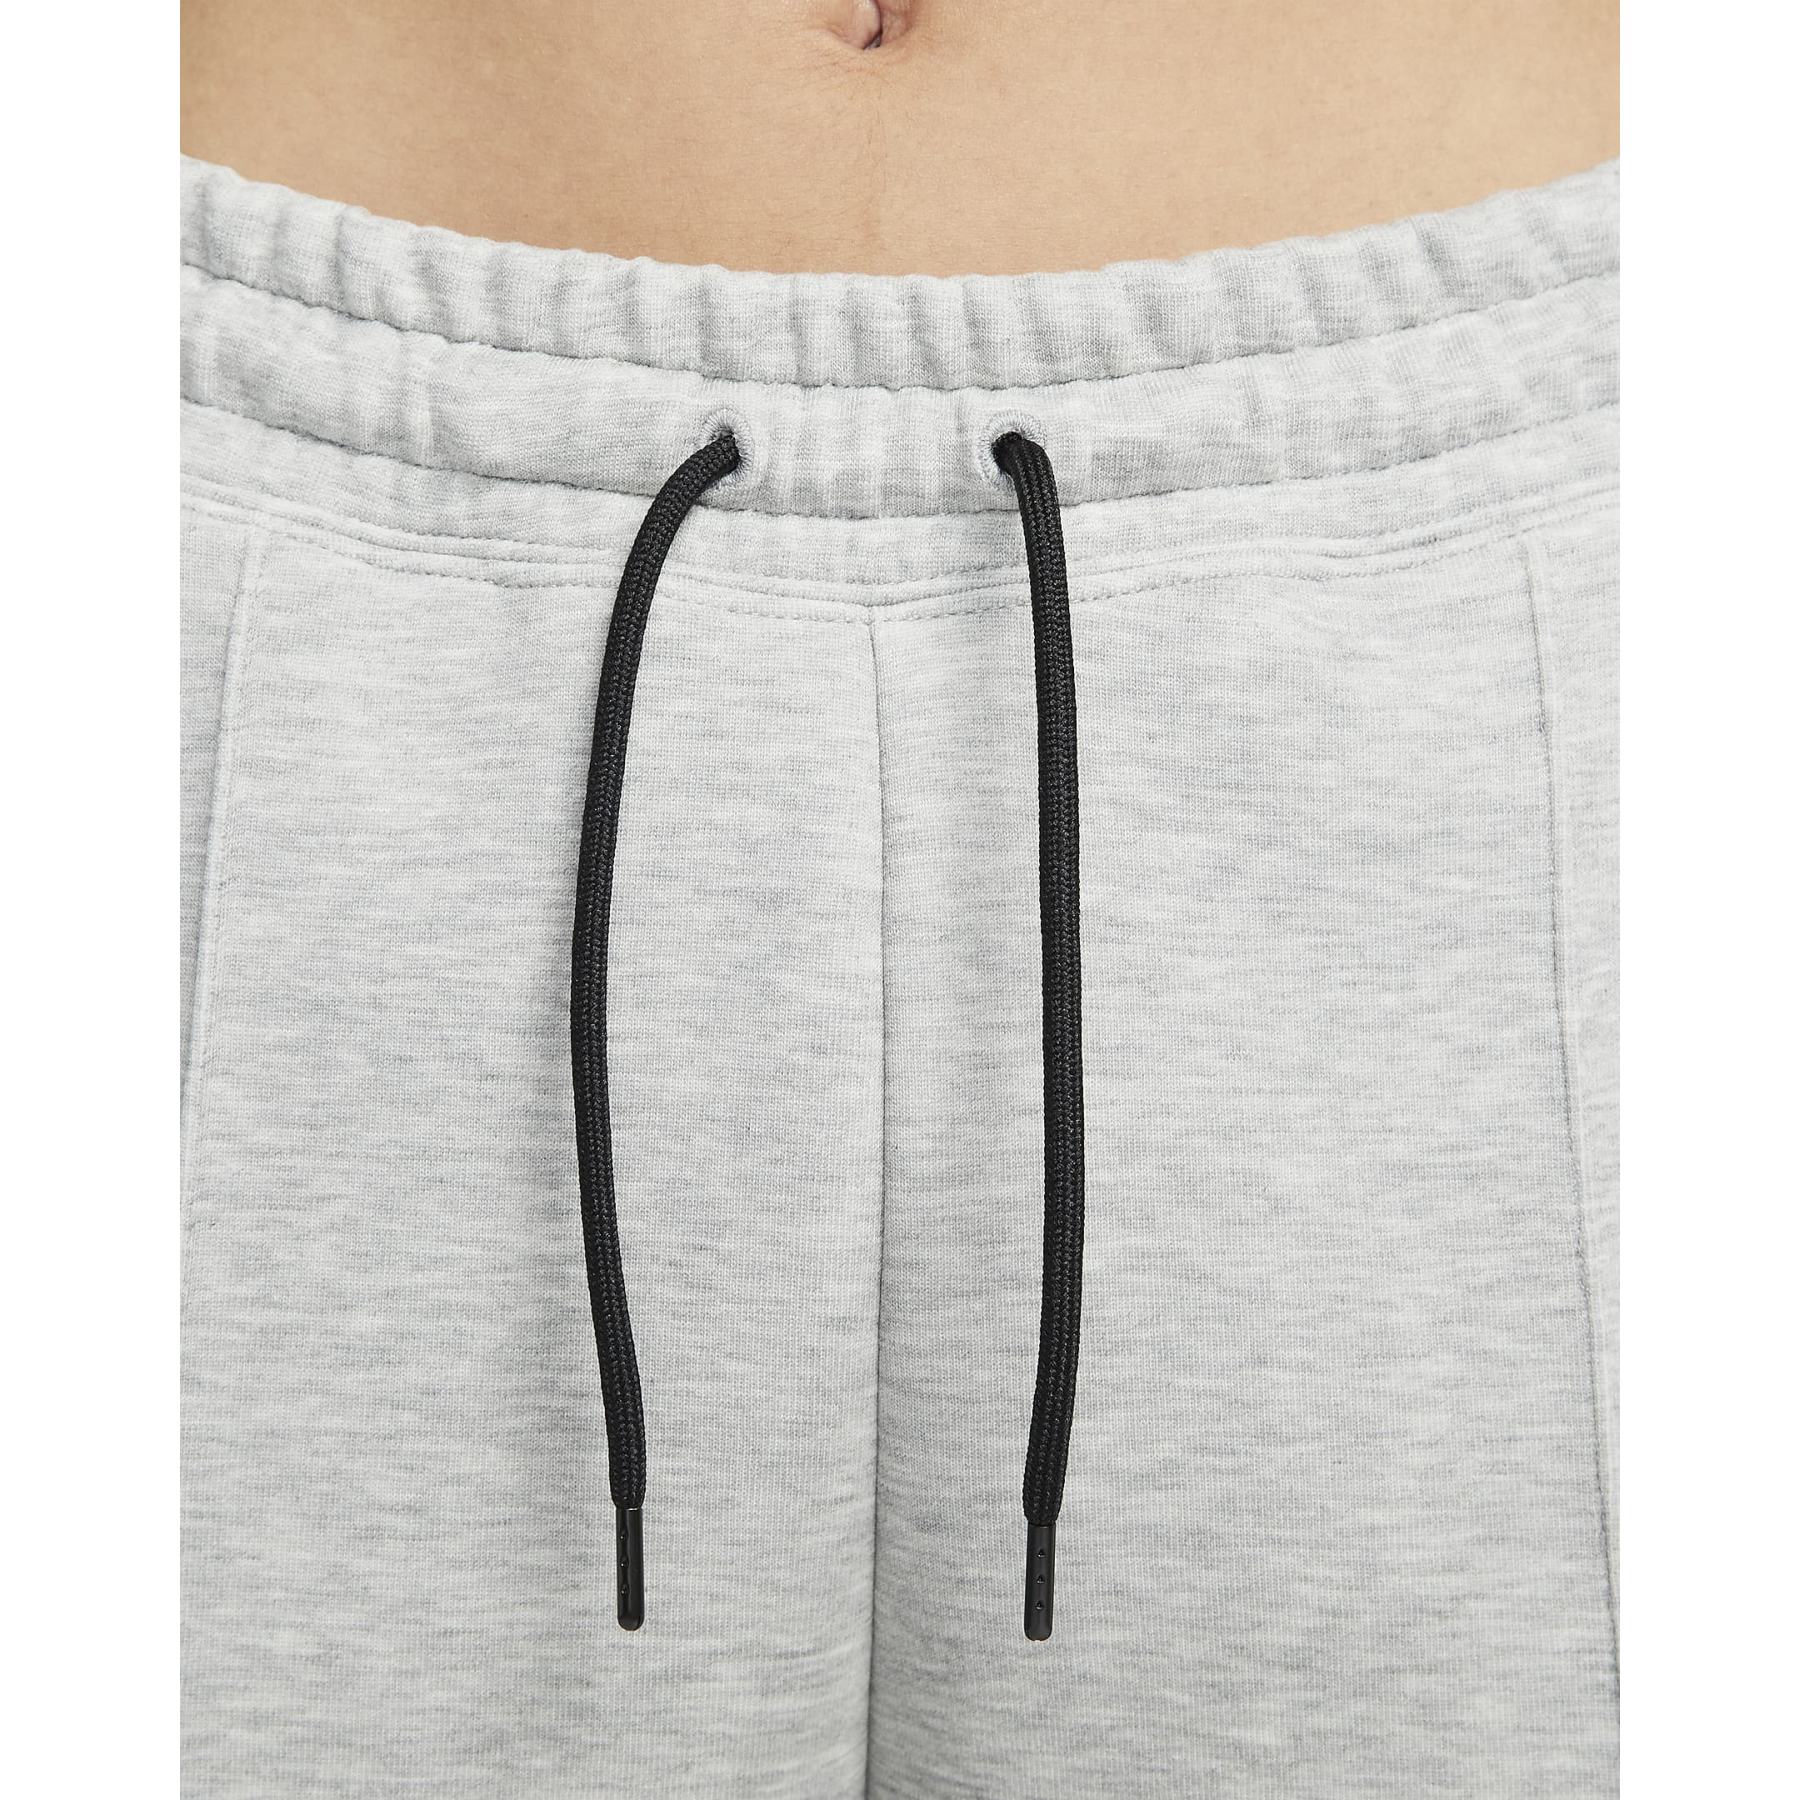 Nike Sportswear Tech Fleece Jogger Pants Women - dark grey heather/black  FB8330-063